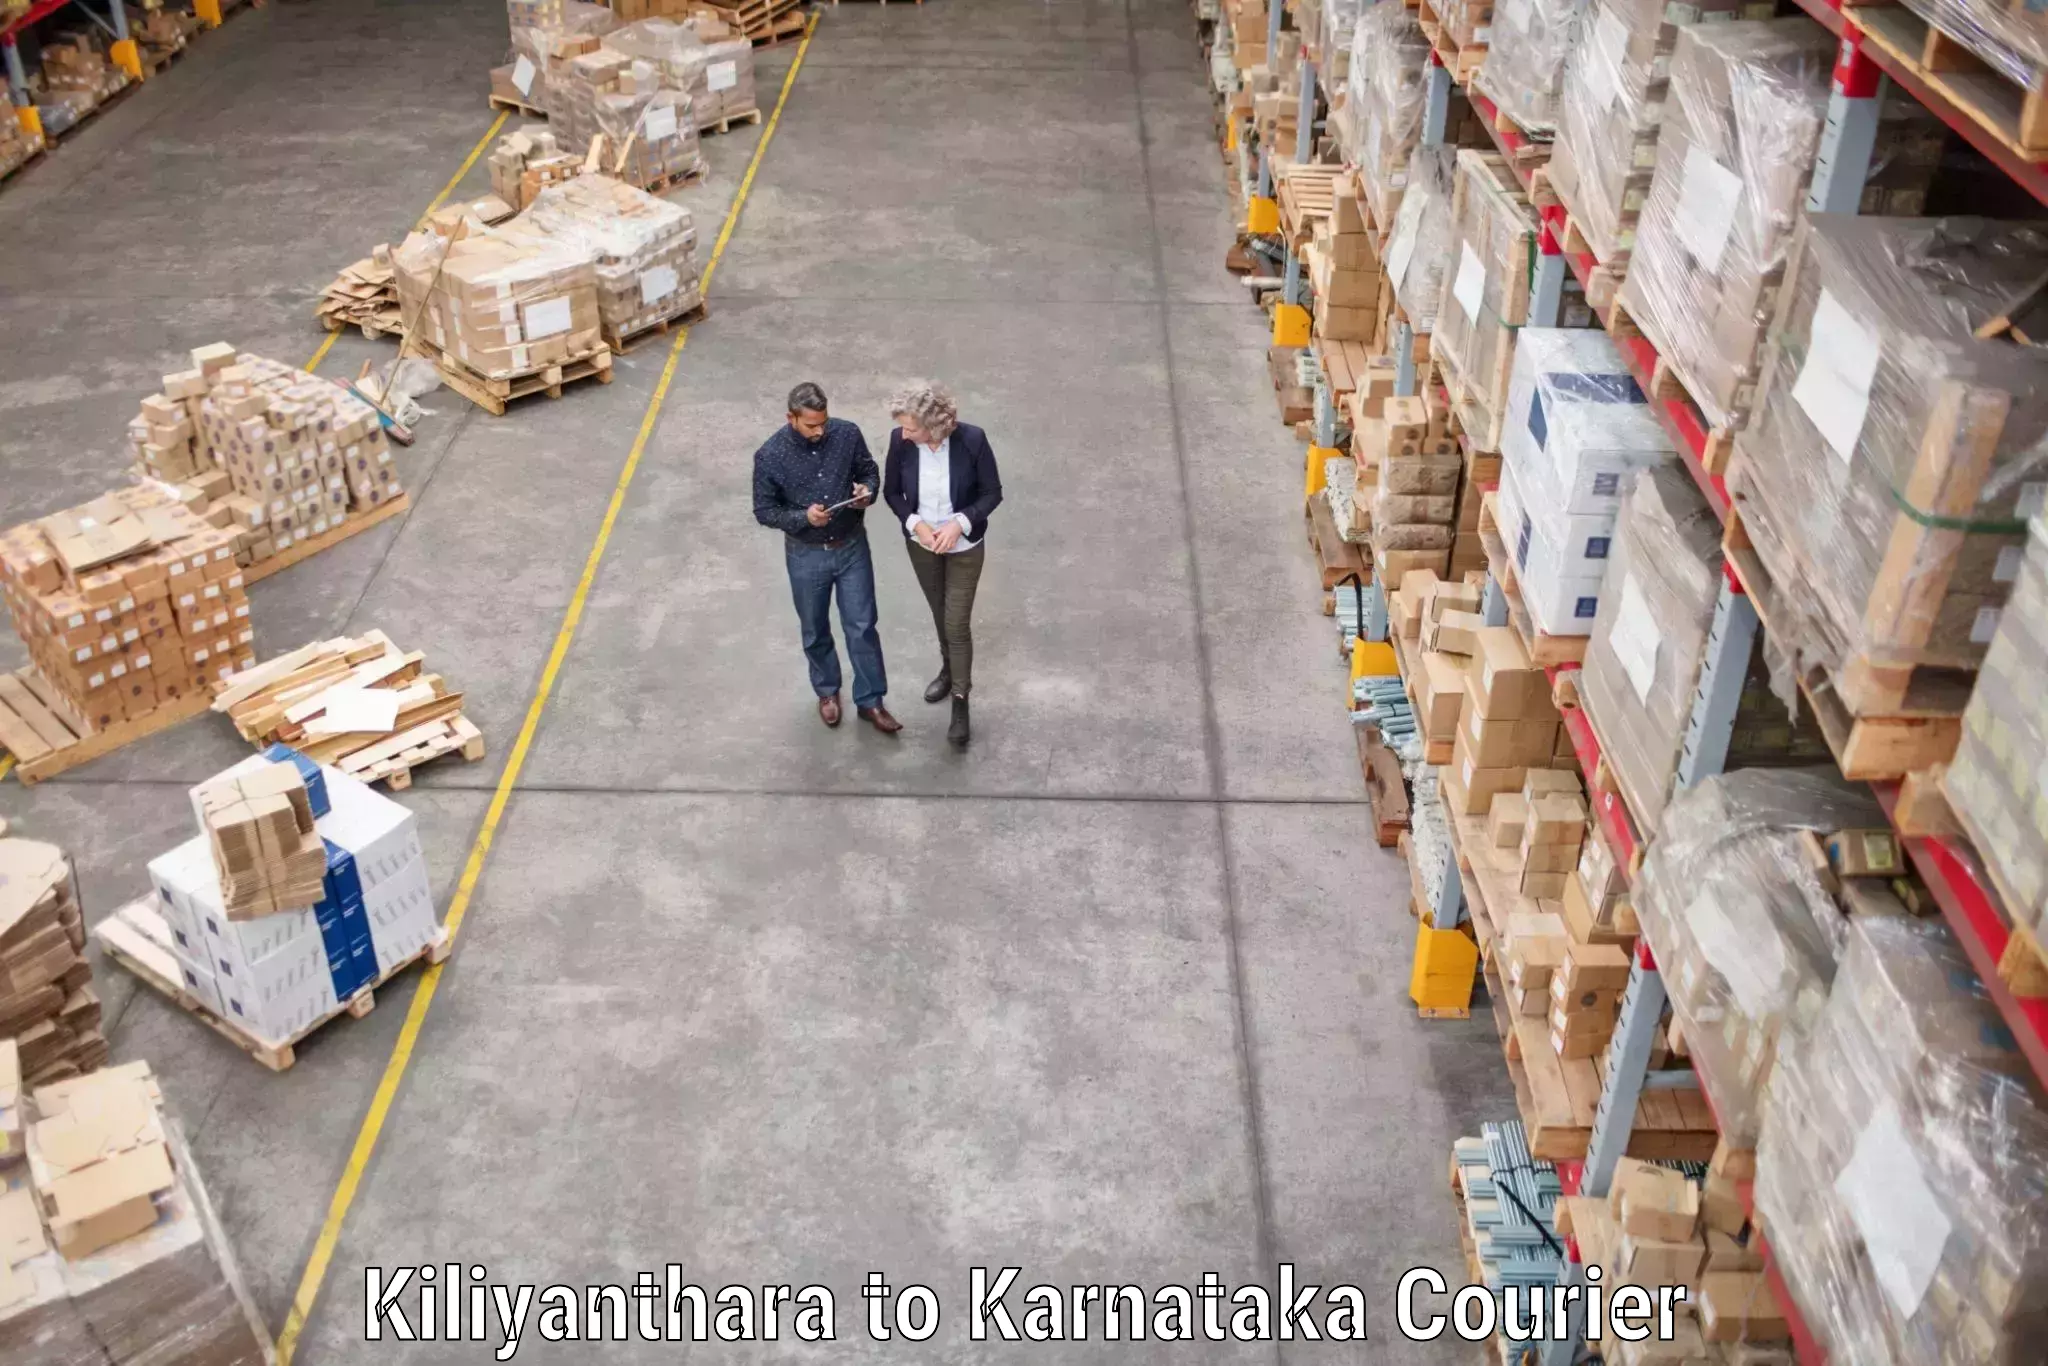 Skilled furniture movers Kiliyanthara to Kollegal